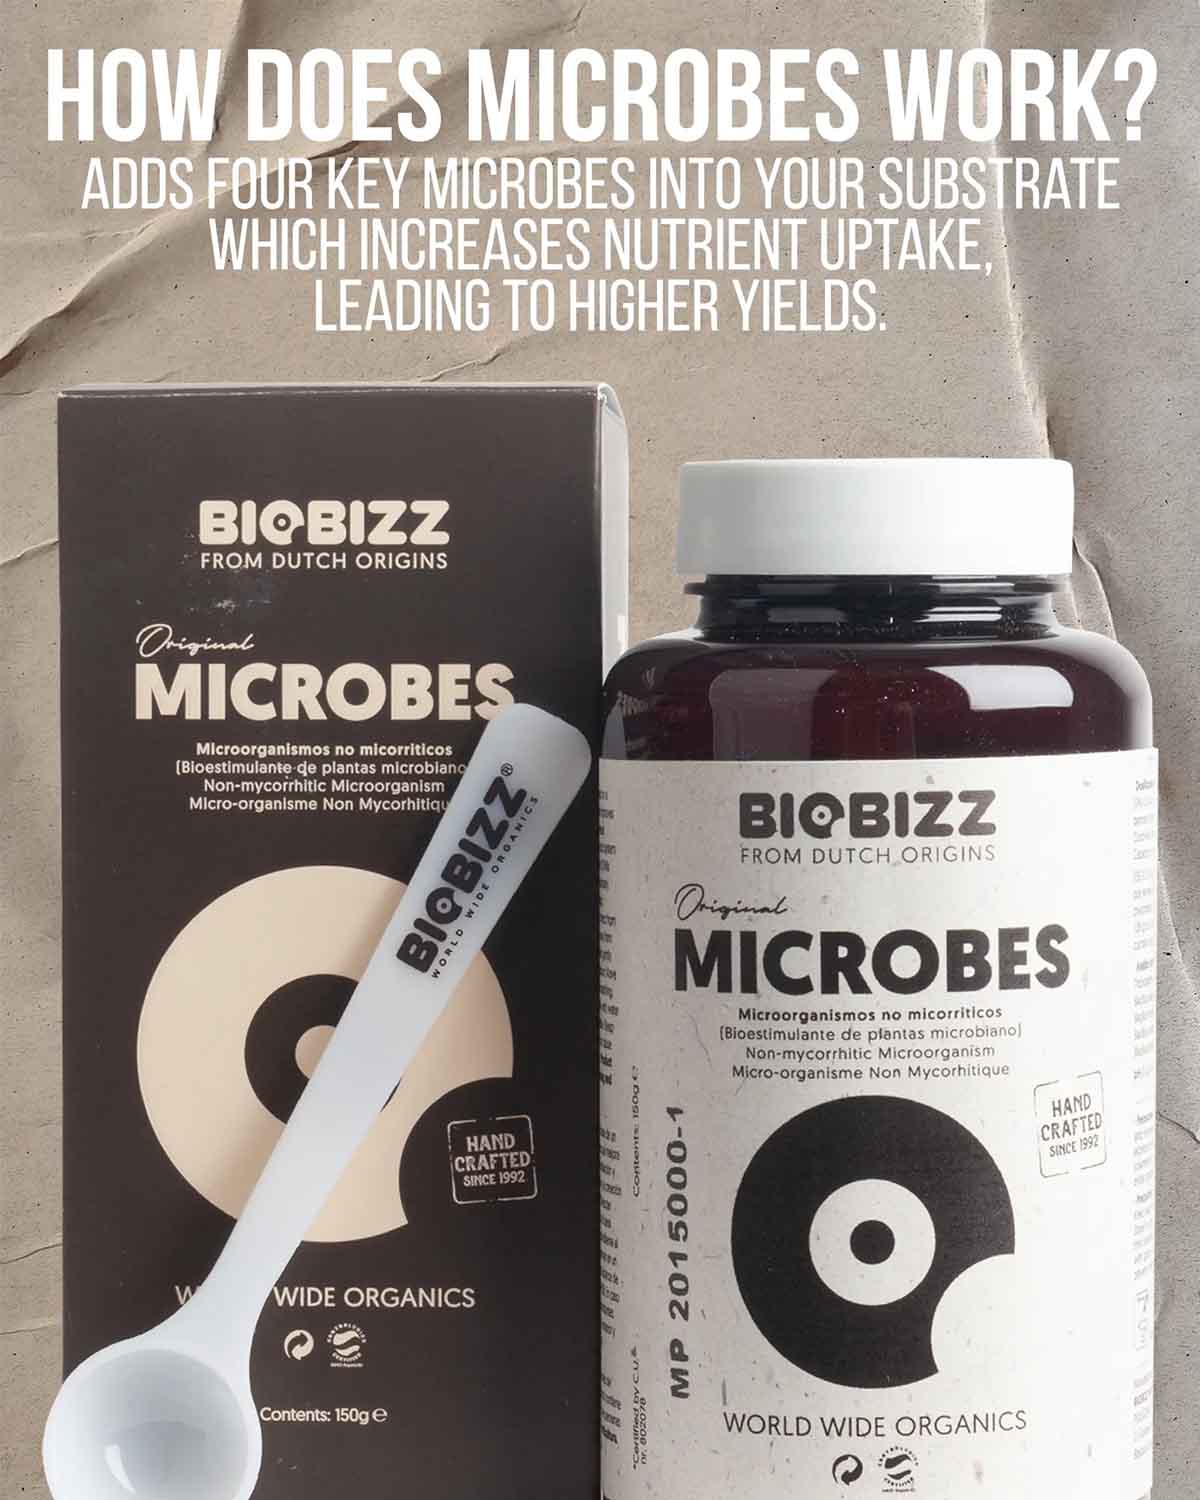 New Arrival - BioBizz Microbes